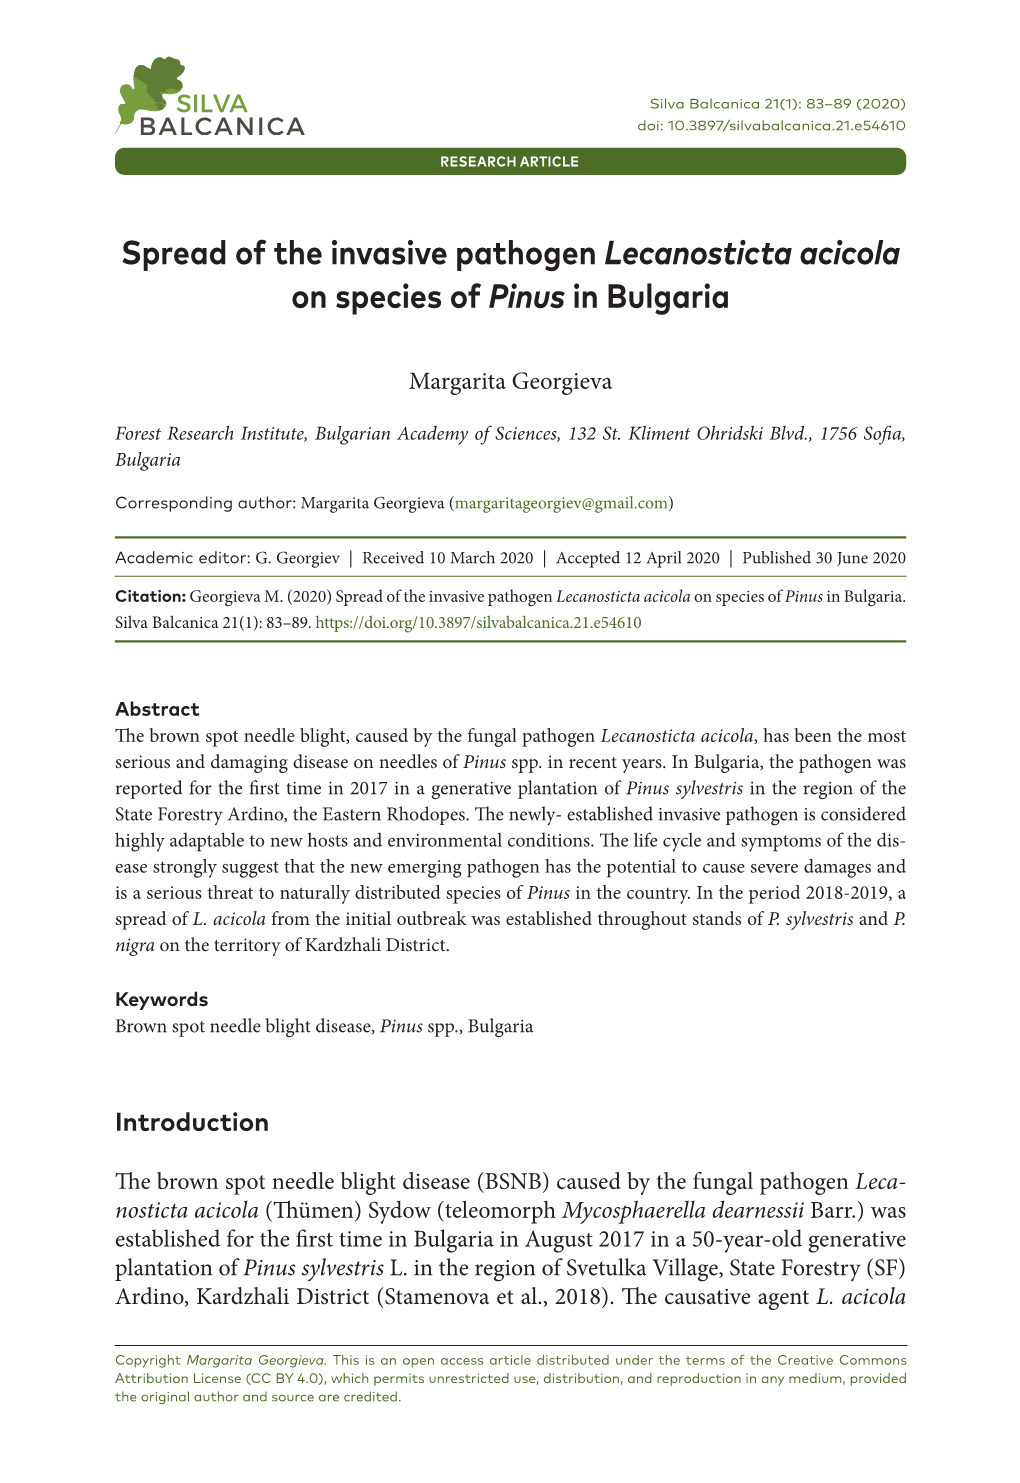 Spread of the Invasive Pathogen Lecanosticta Acicola on Species of Pinus in Bulgaria